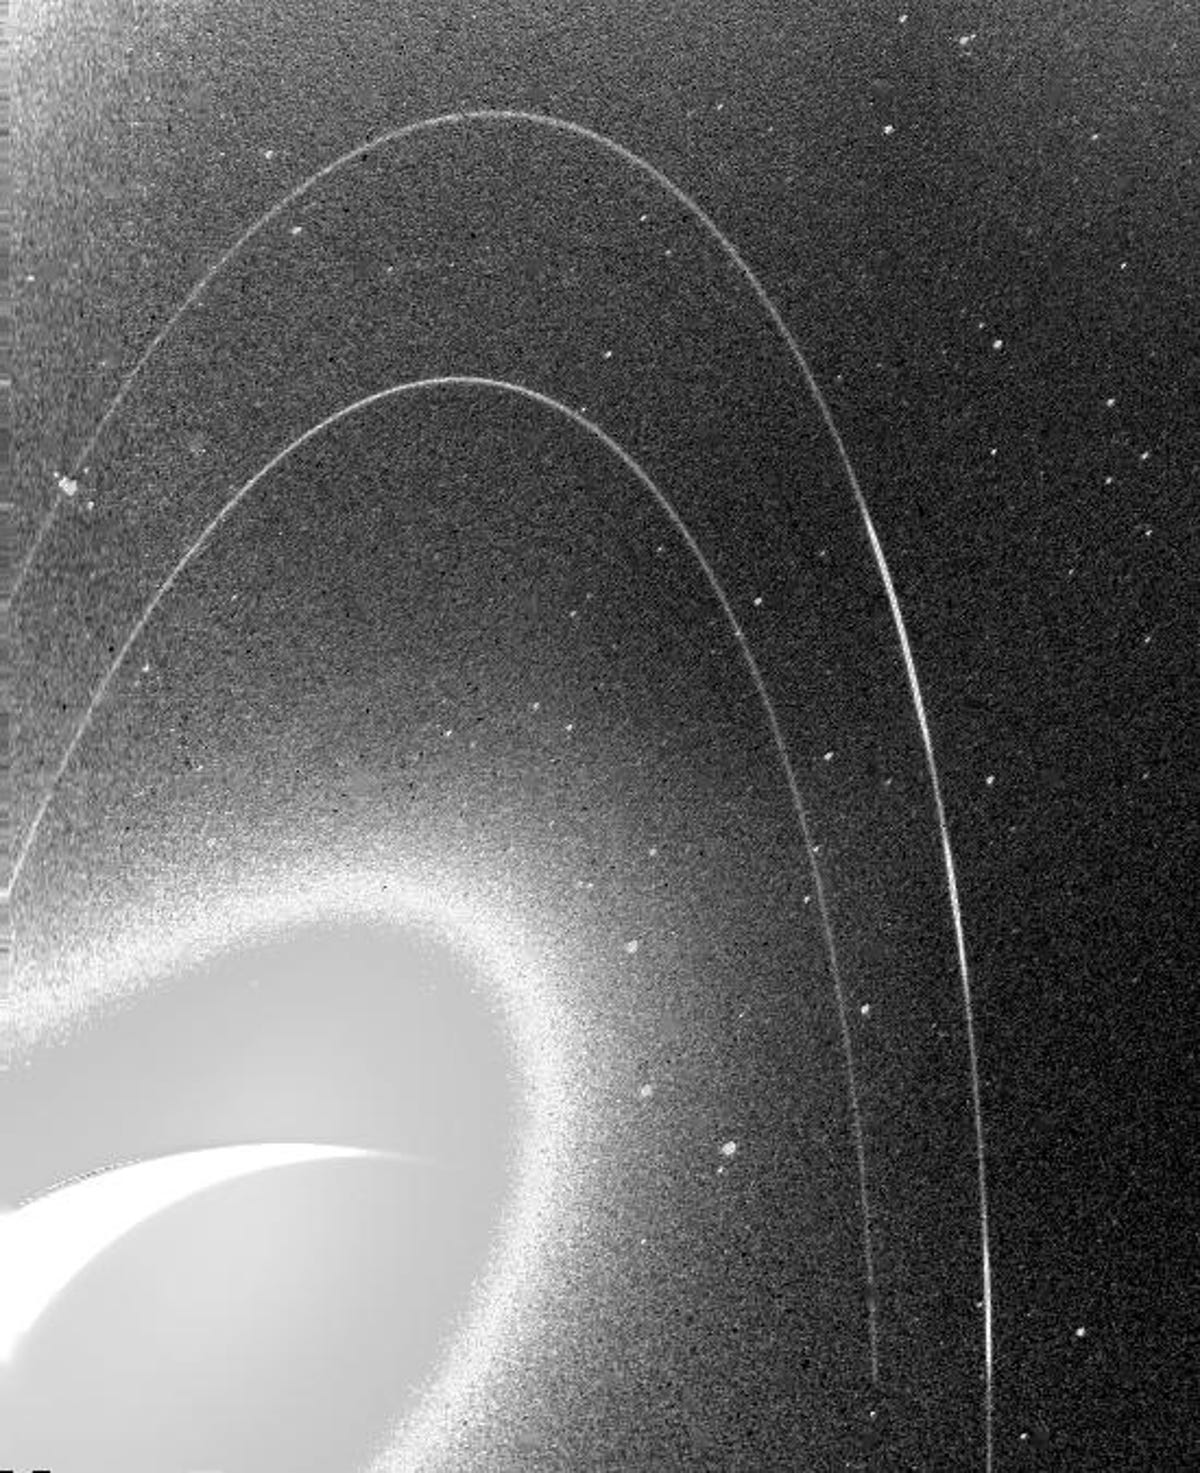 De korrelige zwart-witafbeelding toont de vage ringen van Neptunus.